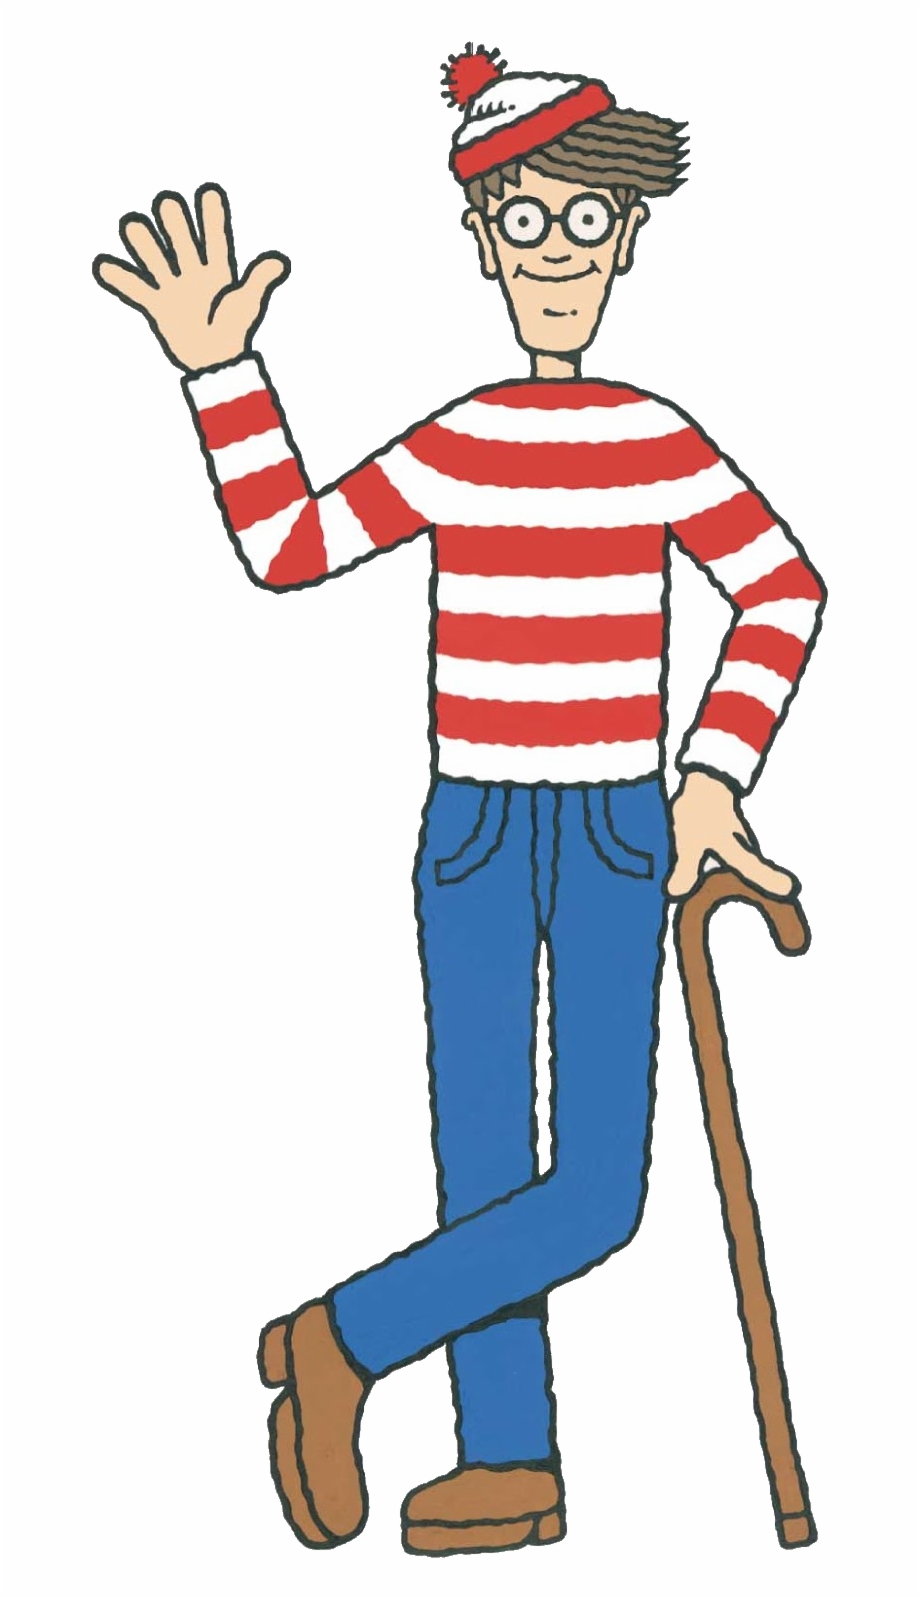 Waldo is Found!